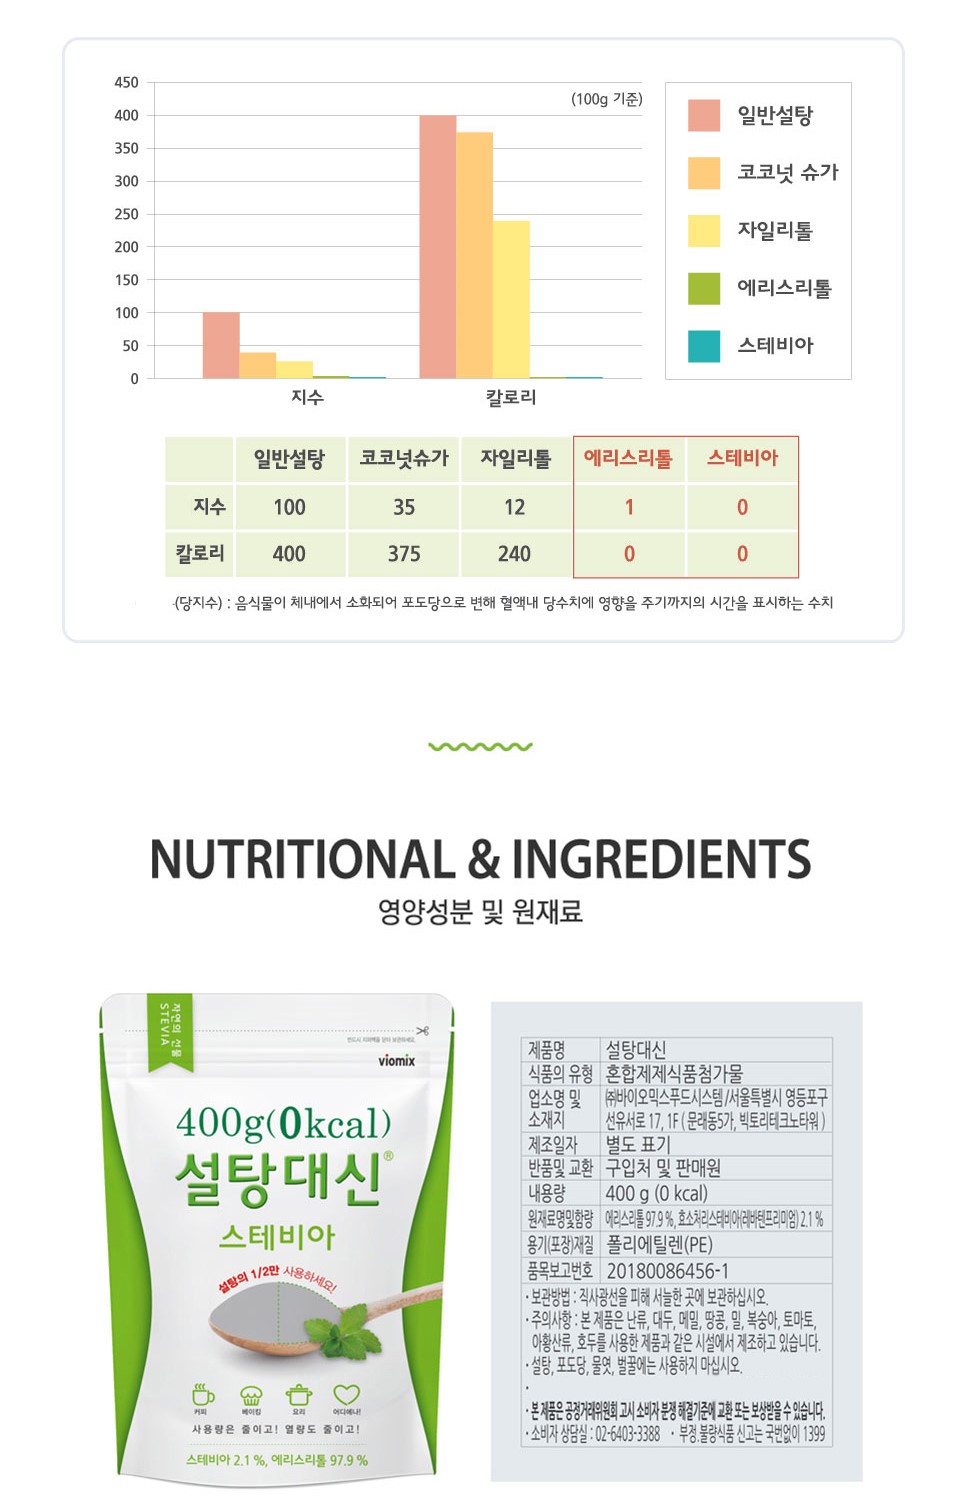 韓國食品-[바이오믹스] 설탕대신 스테비아 400g